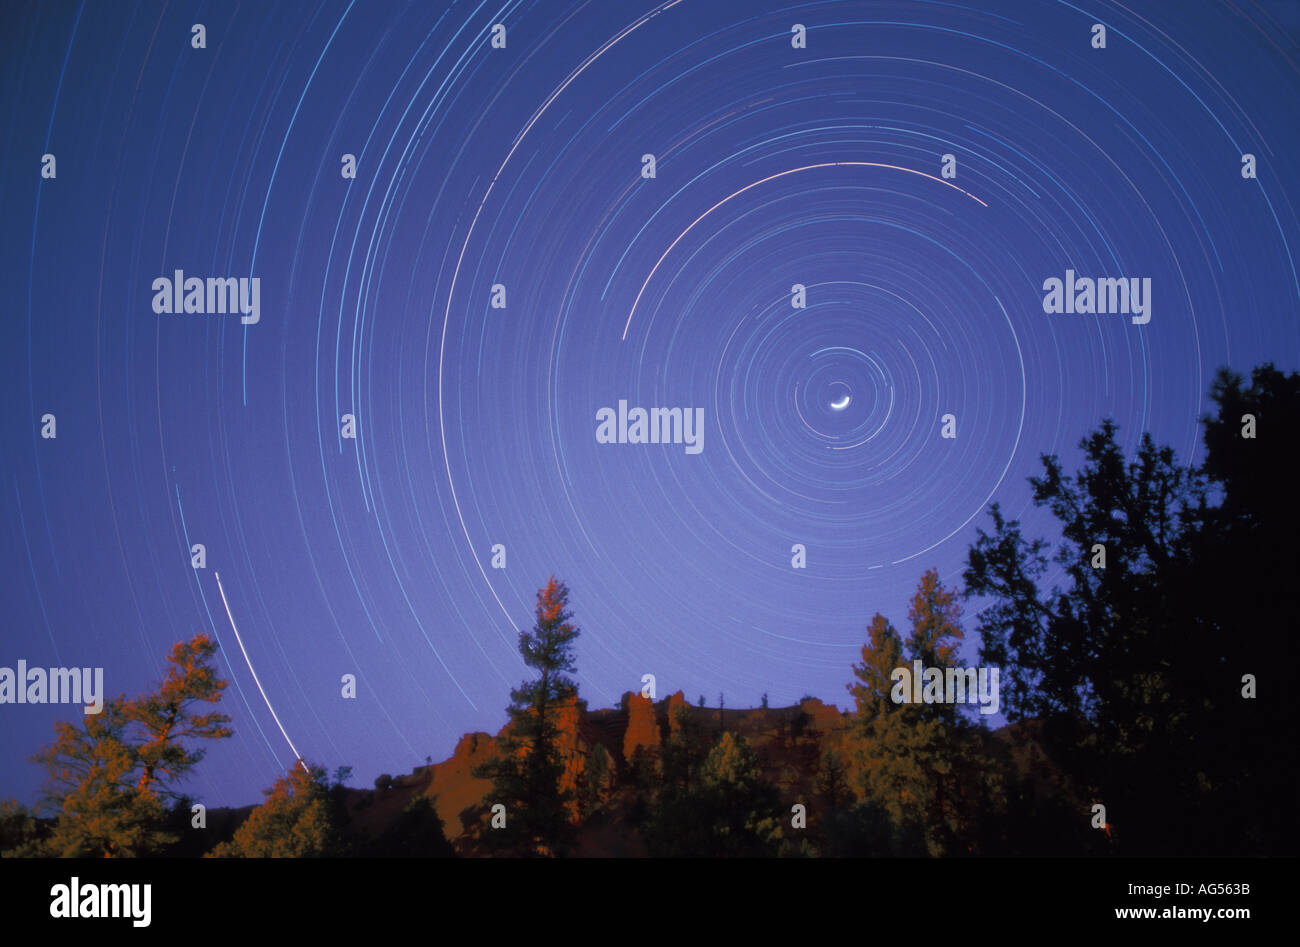 Exposición de tiempo Estelas de estrellas del cielo nocturno Foto de stock